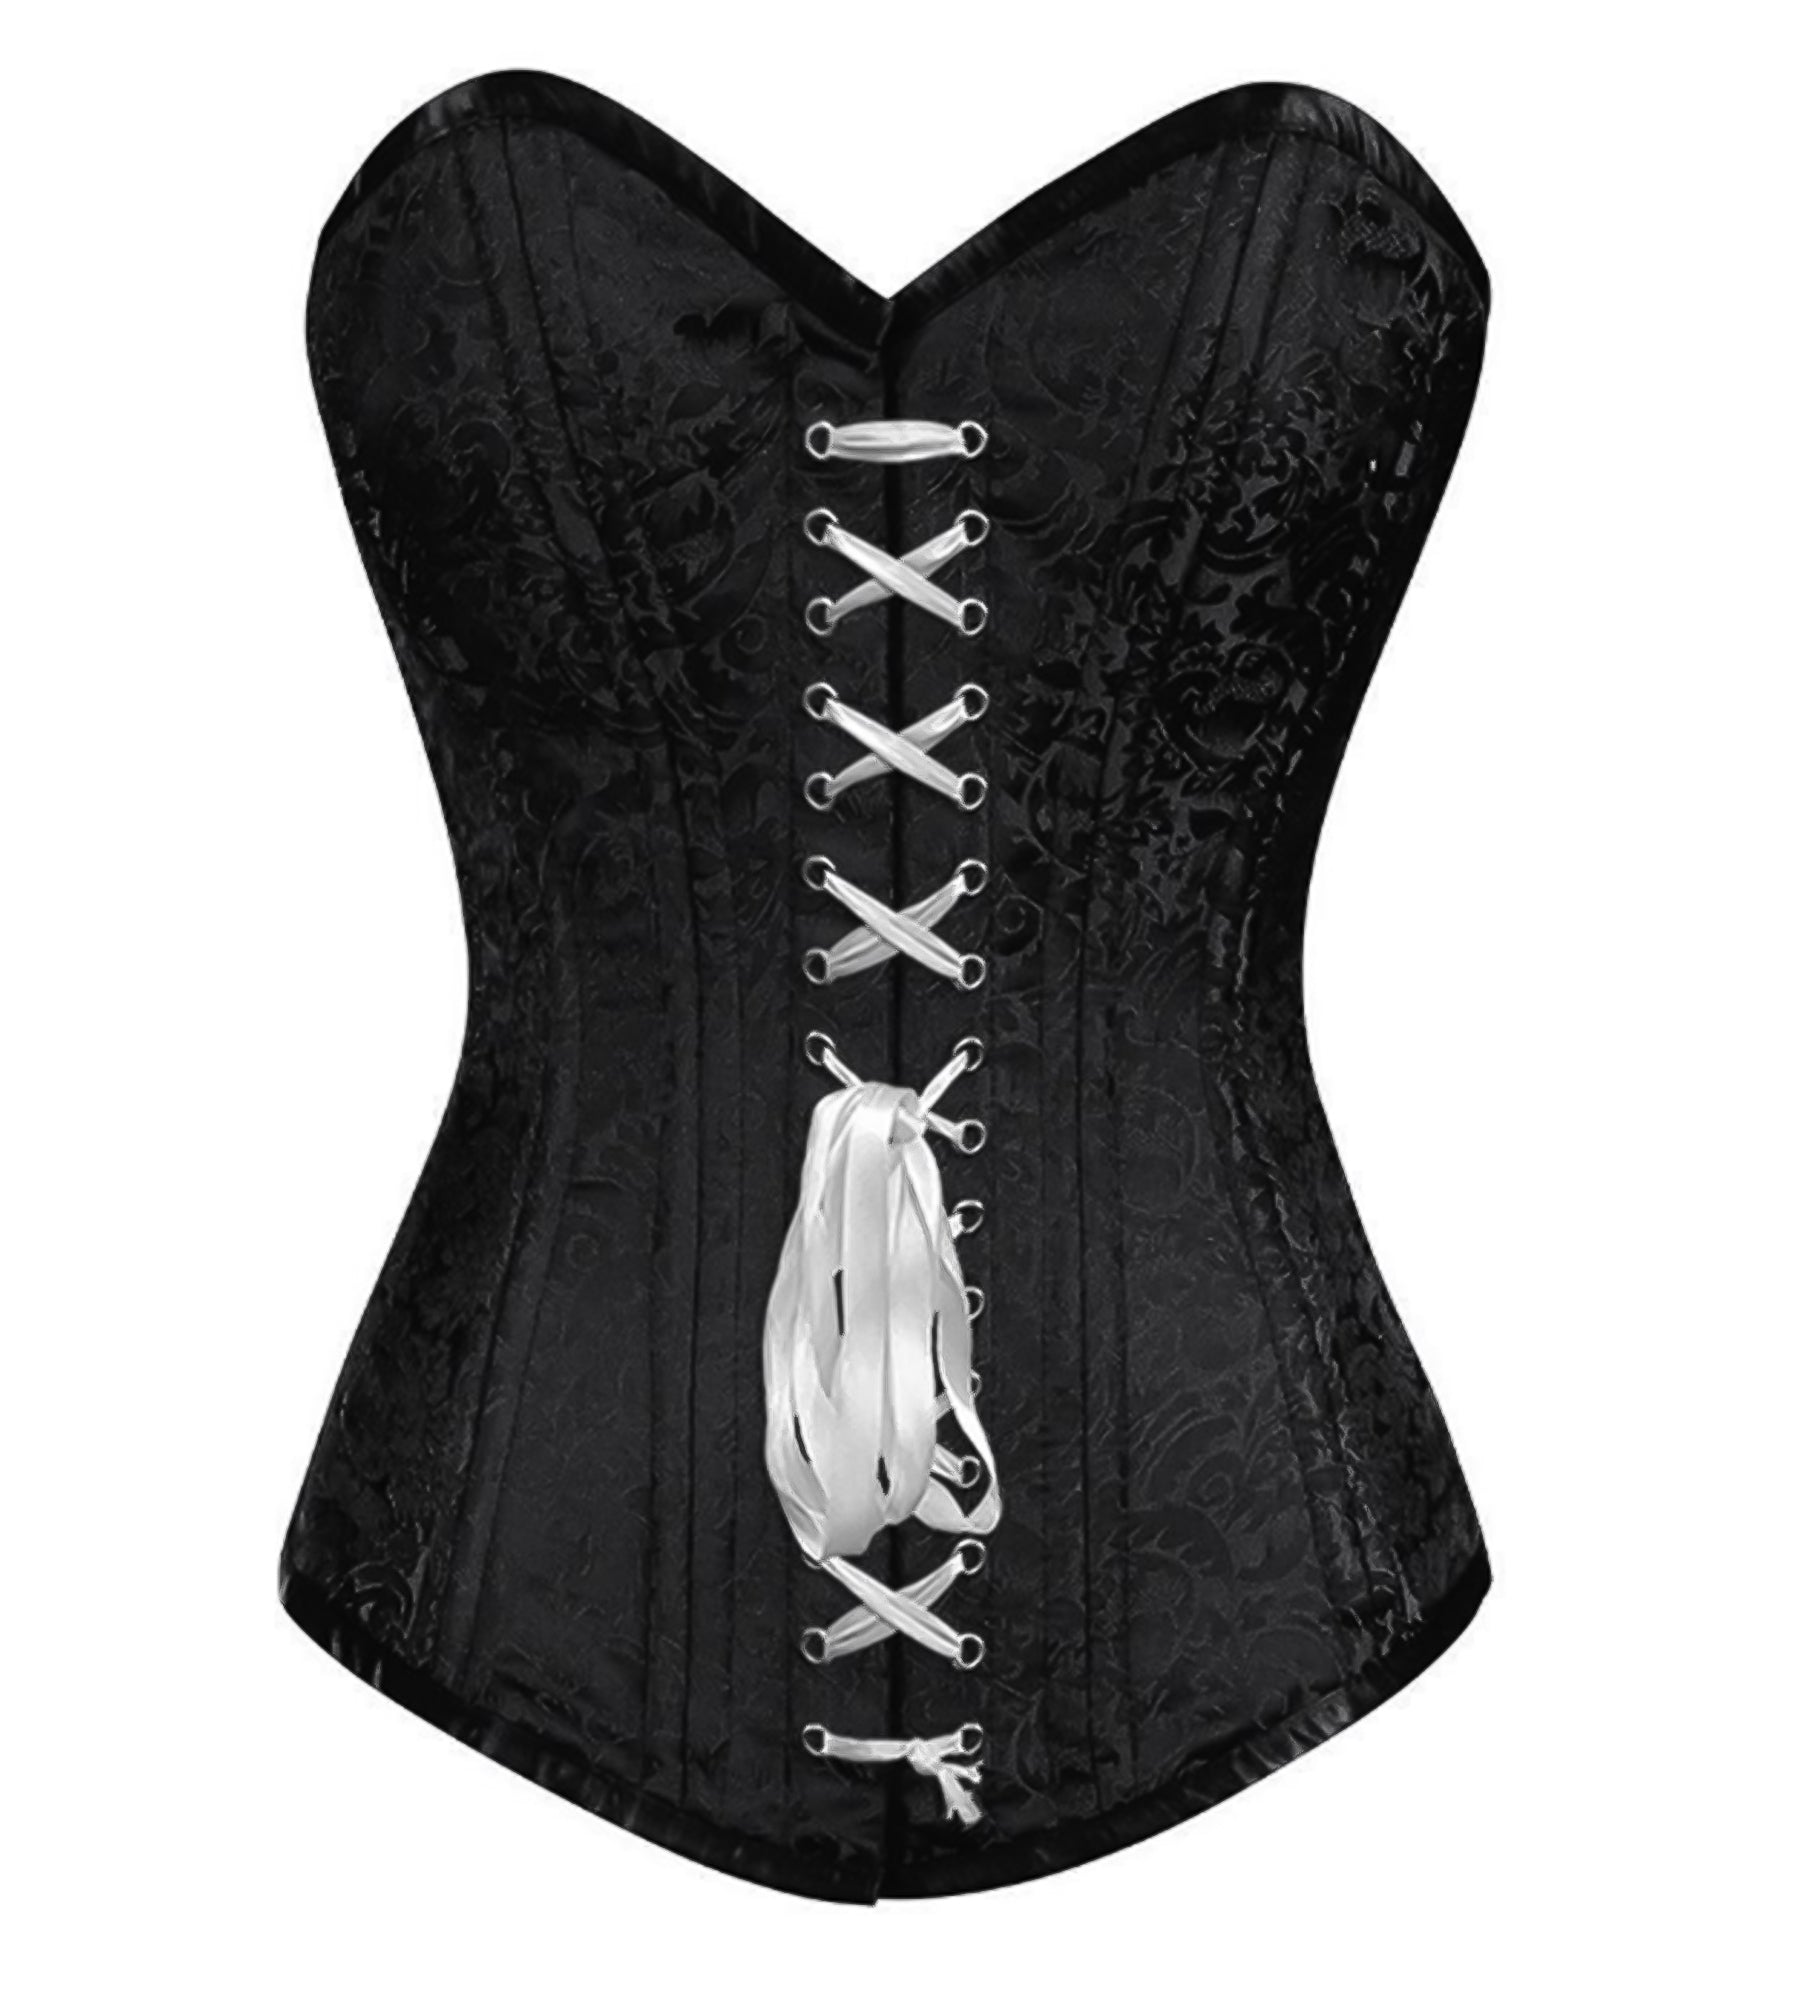 http://corsetsnmore.com/cdn/shop/products/CNM-704_1_1e50cc6a-b613-43e3-aaf2-69c3fb9de274.jpg?v=1603007452